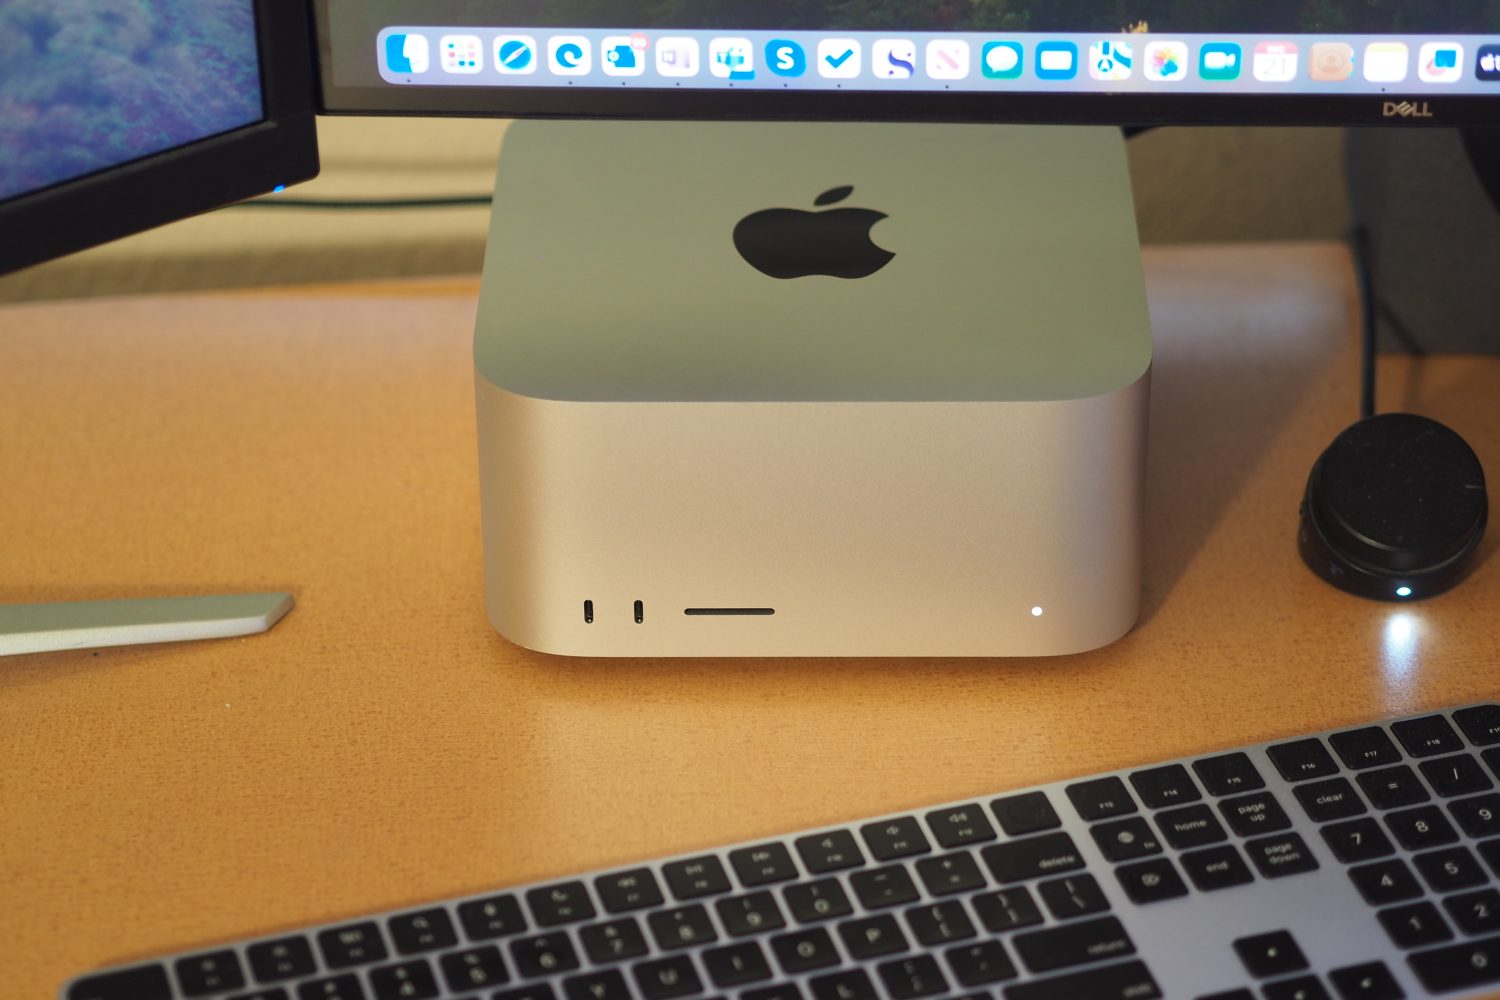 نمای بالا به پایین Apple Mac Studio که کامپیوتر و صفحه کلید را نشان می دهد.